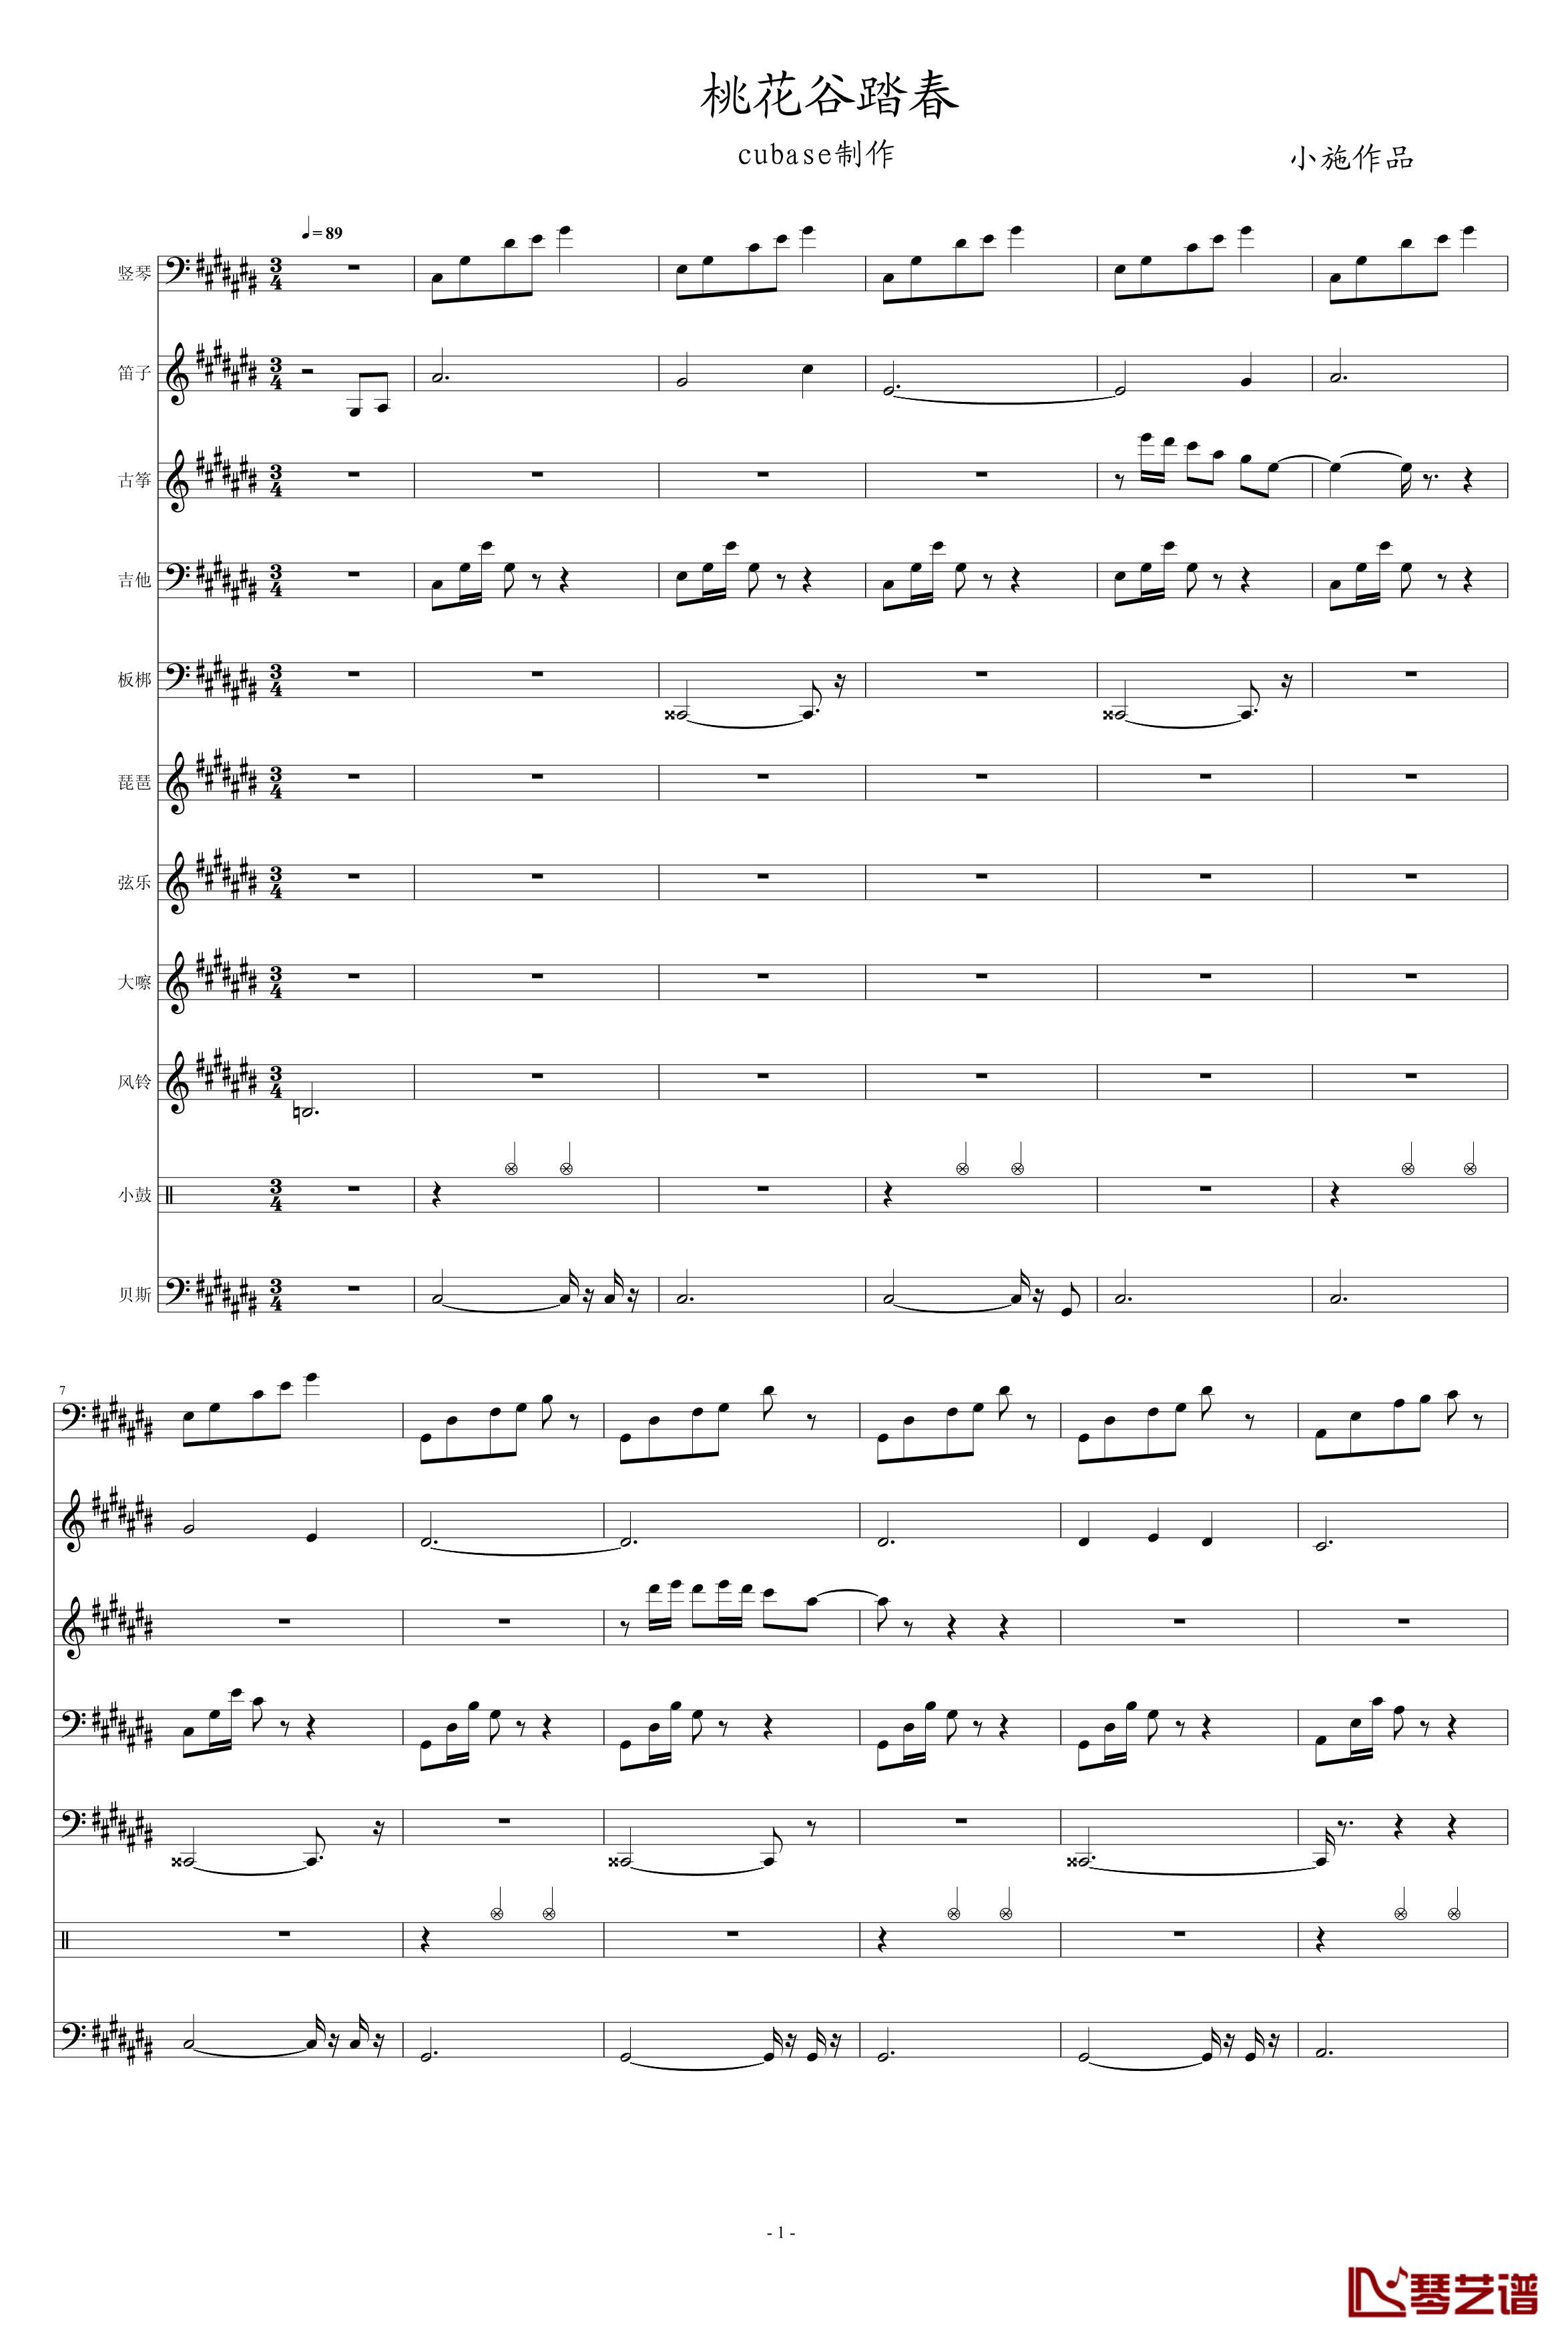 桃花谷踏春钢琴谱-中国风-笛子、古筝、琵琶-peterkingily1